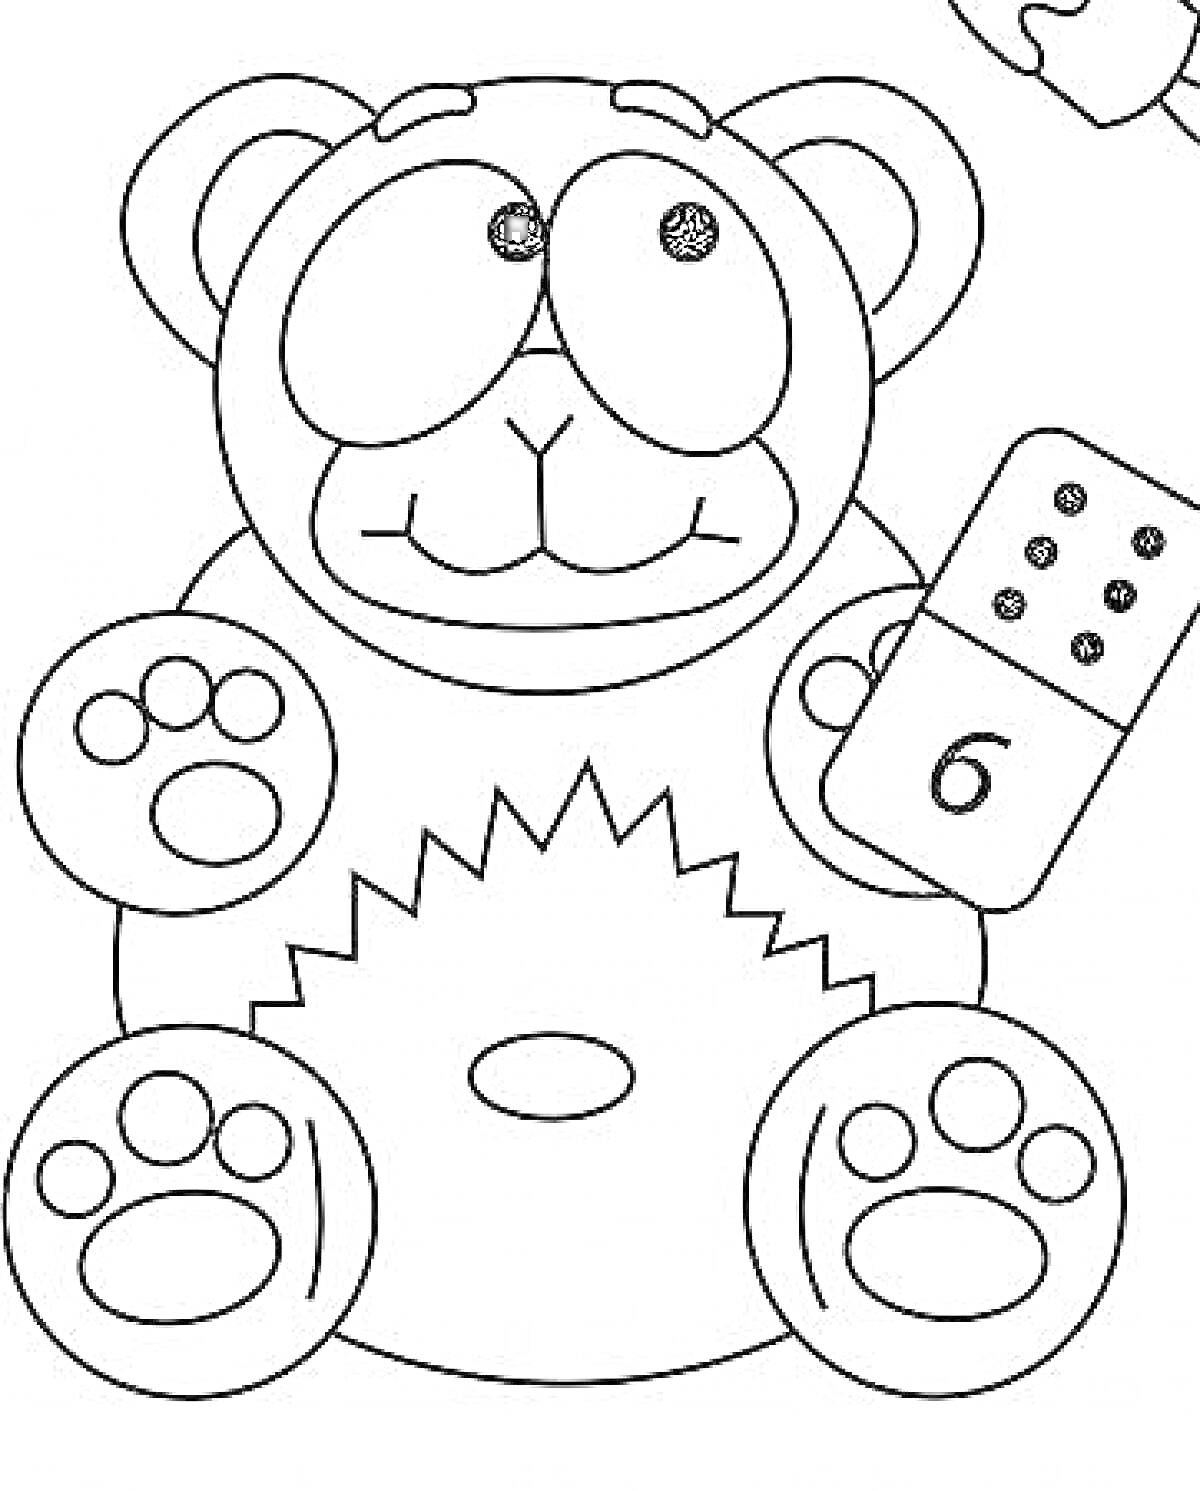 РаскраскаВалера медведь с костяшкой домино